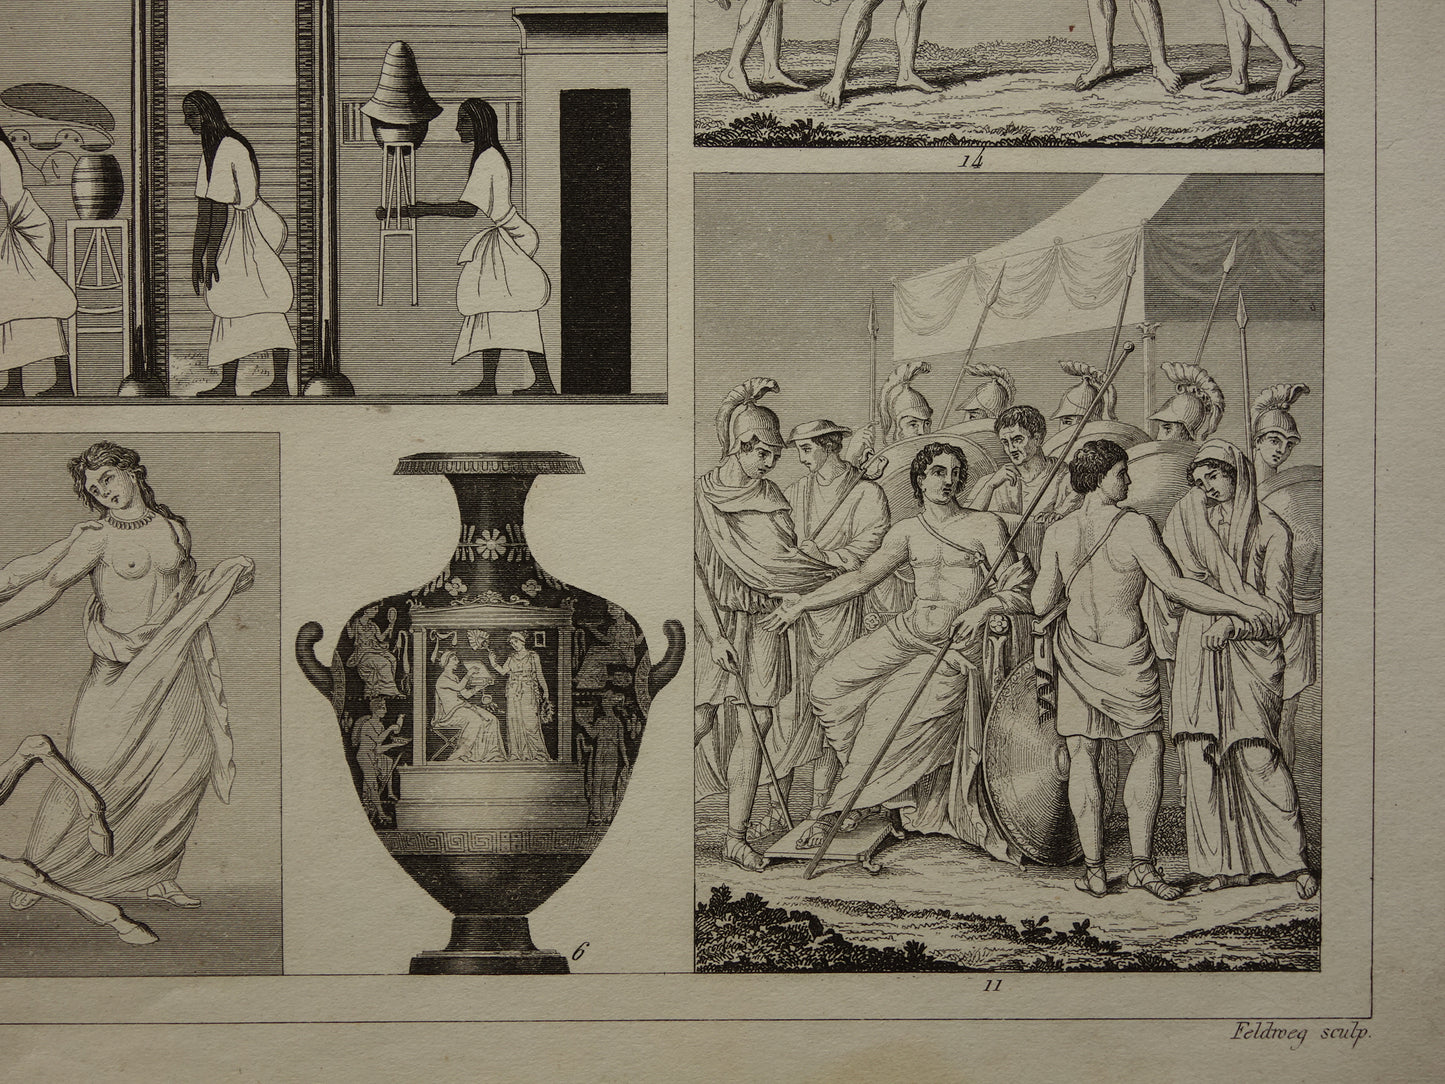 Oude Egyptische Griekse en Romeinse illustraties 160+ jaar oude prent kunstgeschiedenis schilderkunst in klassieke oudheid